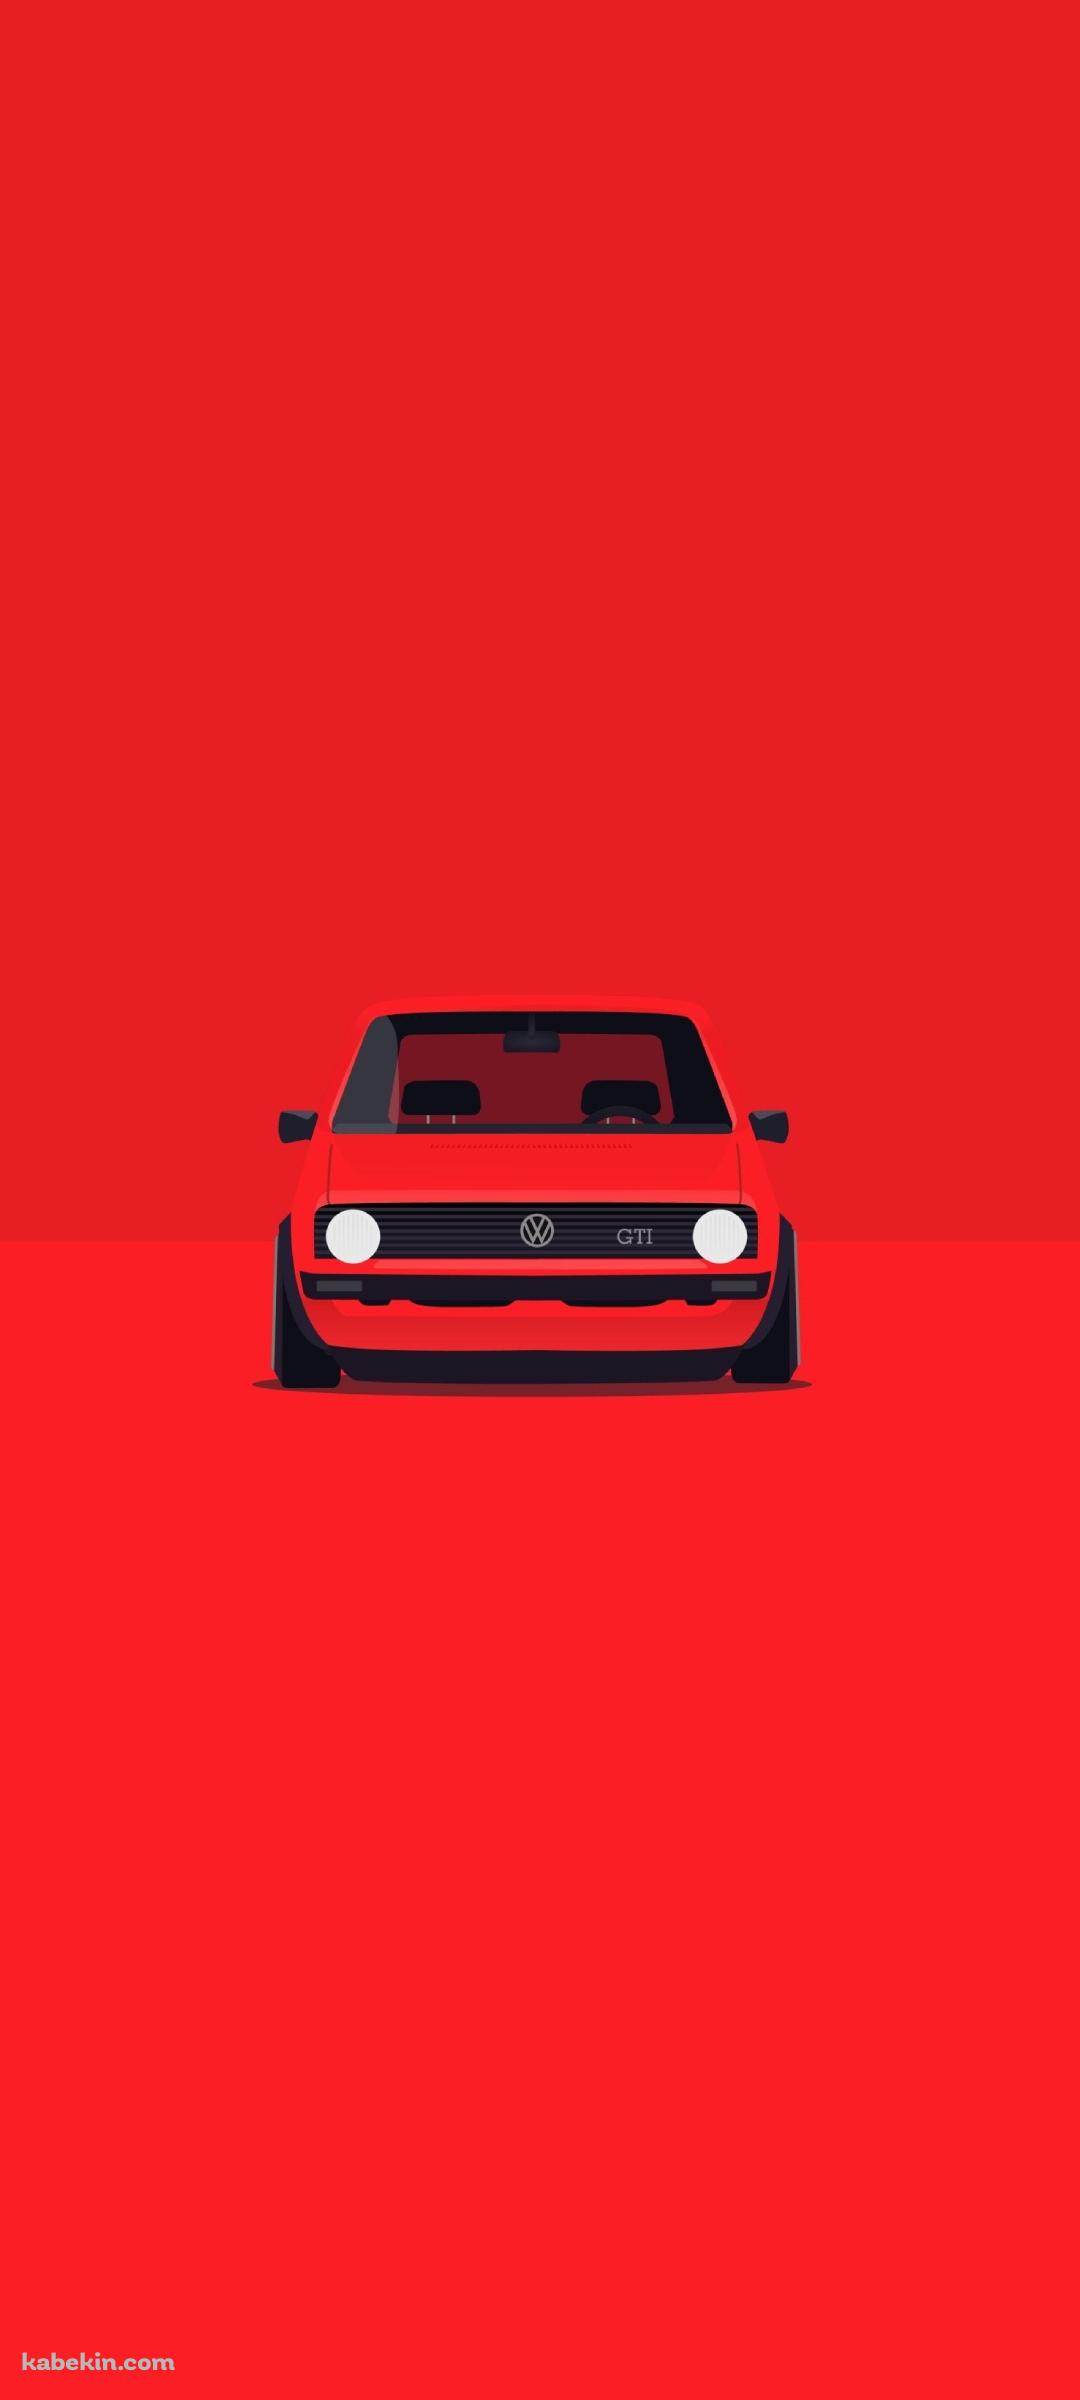 フォルクスワーゲン Golf MK1 赤のAndroidの壁紙(1080px x 2400px) スマホ用